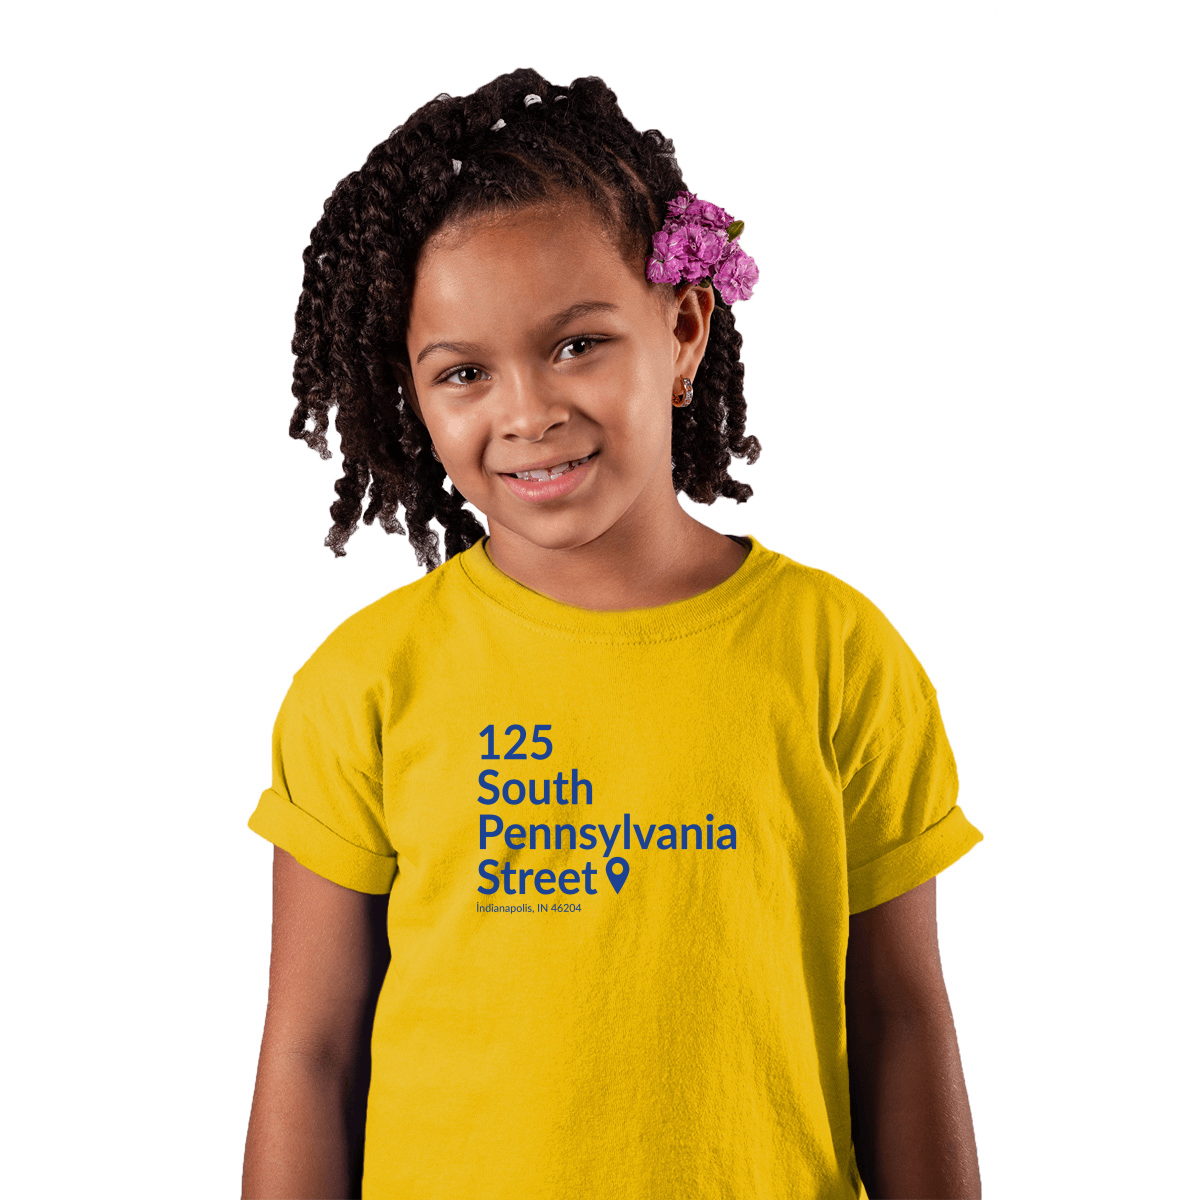 Indiana Basketball Stadium  Kids T-shirt | Yellow